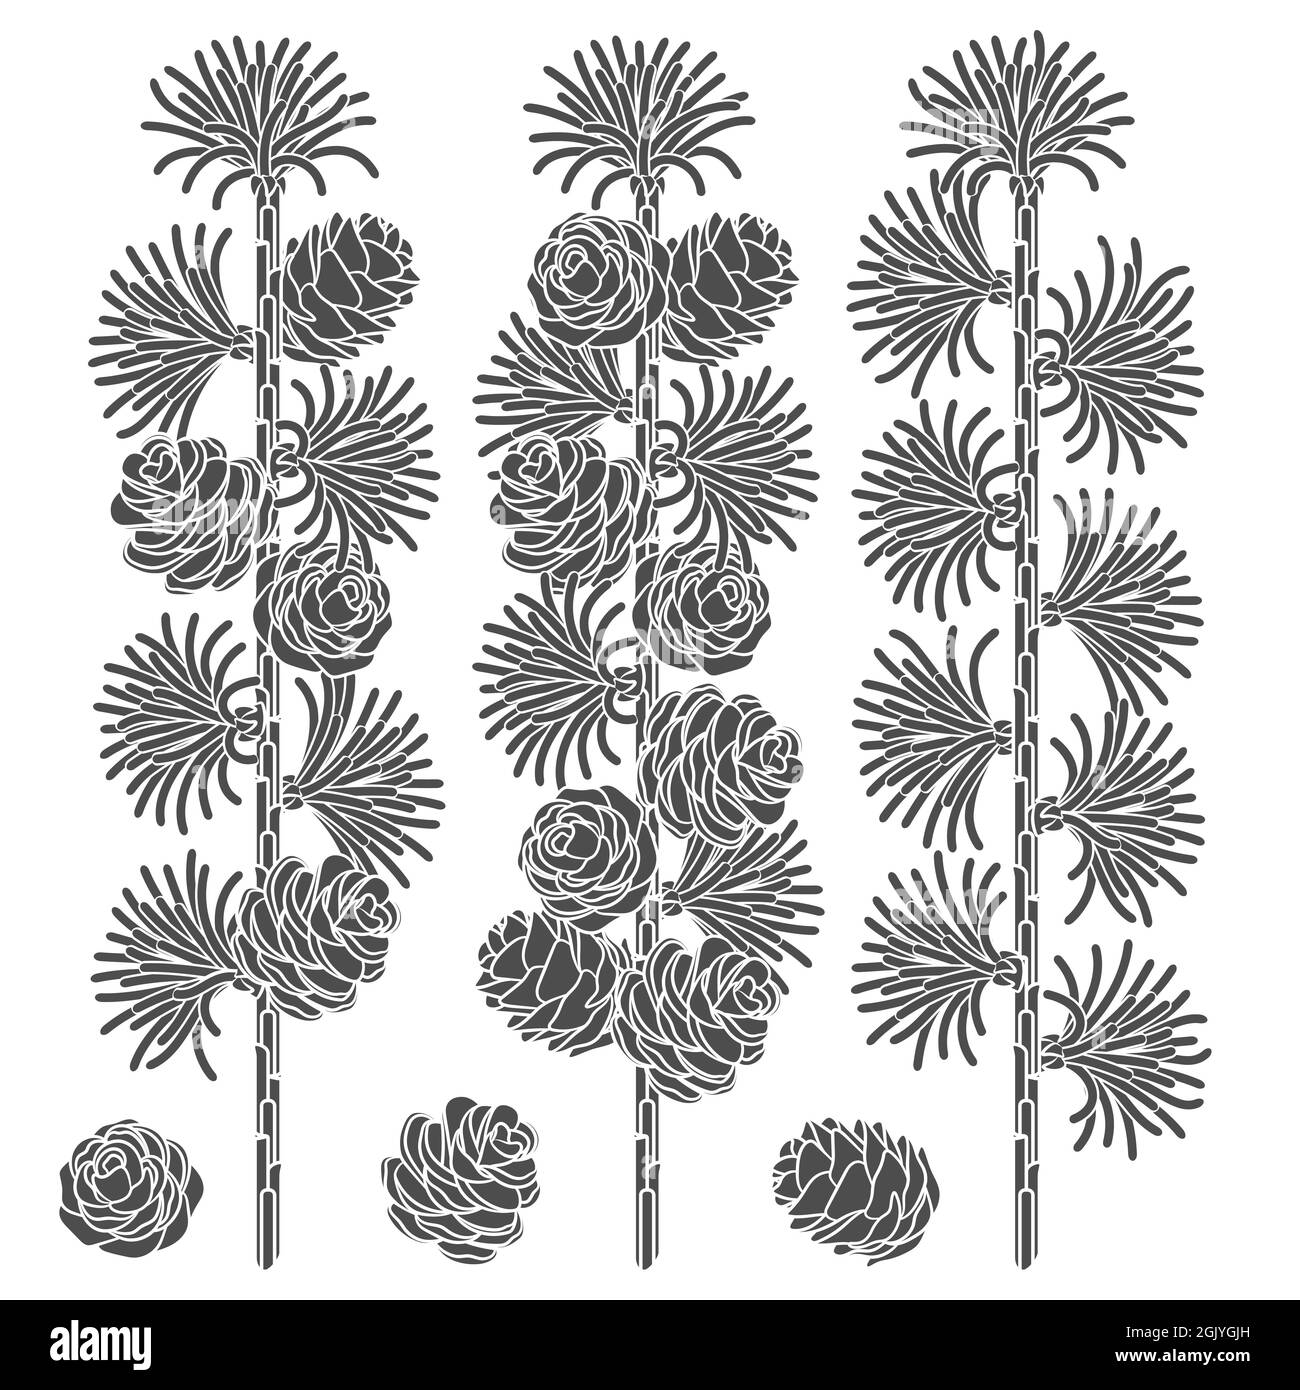 Set di immagini in bianco e nero di rami e coni di larice. Oggetti vettoriali isolati su sfondo bianco. Illustrazione Vettoriale